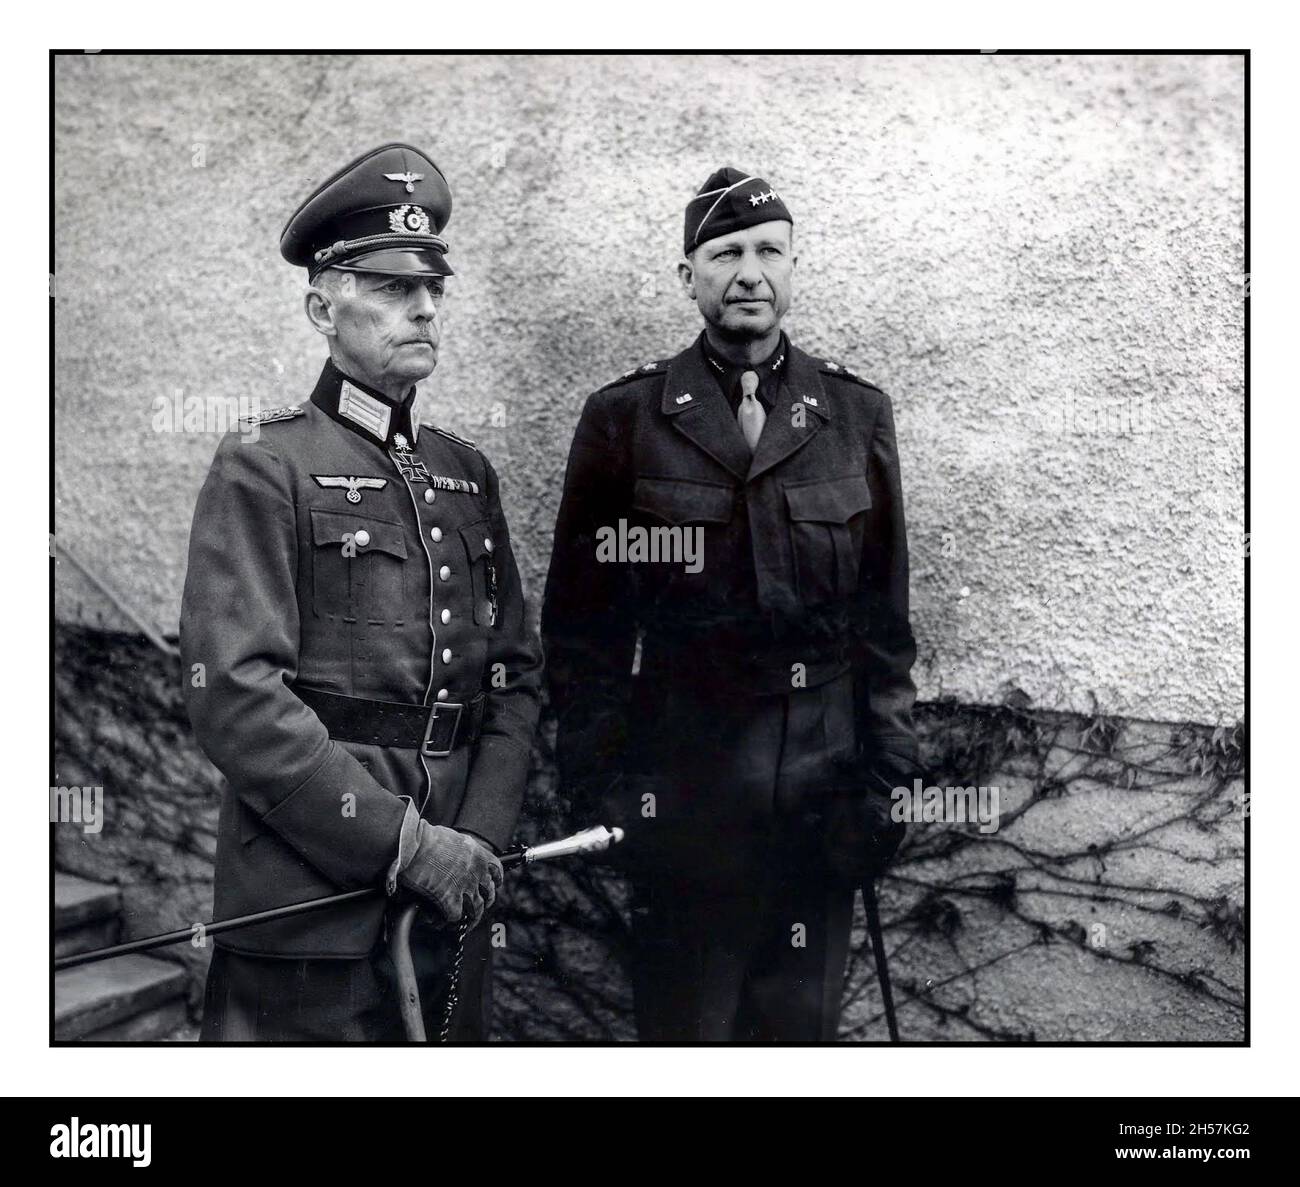 Bild des übergebenen Generals Gerd von Rundstedt ein führendes Militär eroberte Nazi-Kriegsgefangene mit Generalleutnant Alexander M. Patch, Kommandant des Generals der 7. US-Armee, 5. Mai 1945 Stockfoto